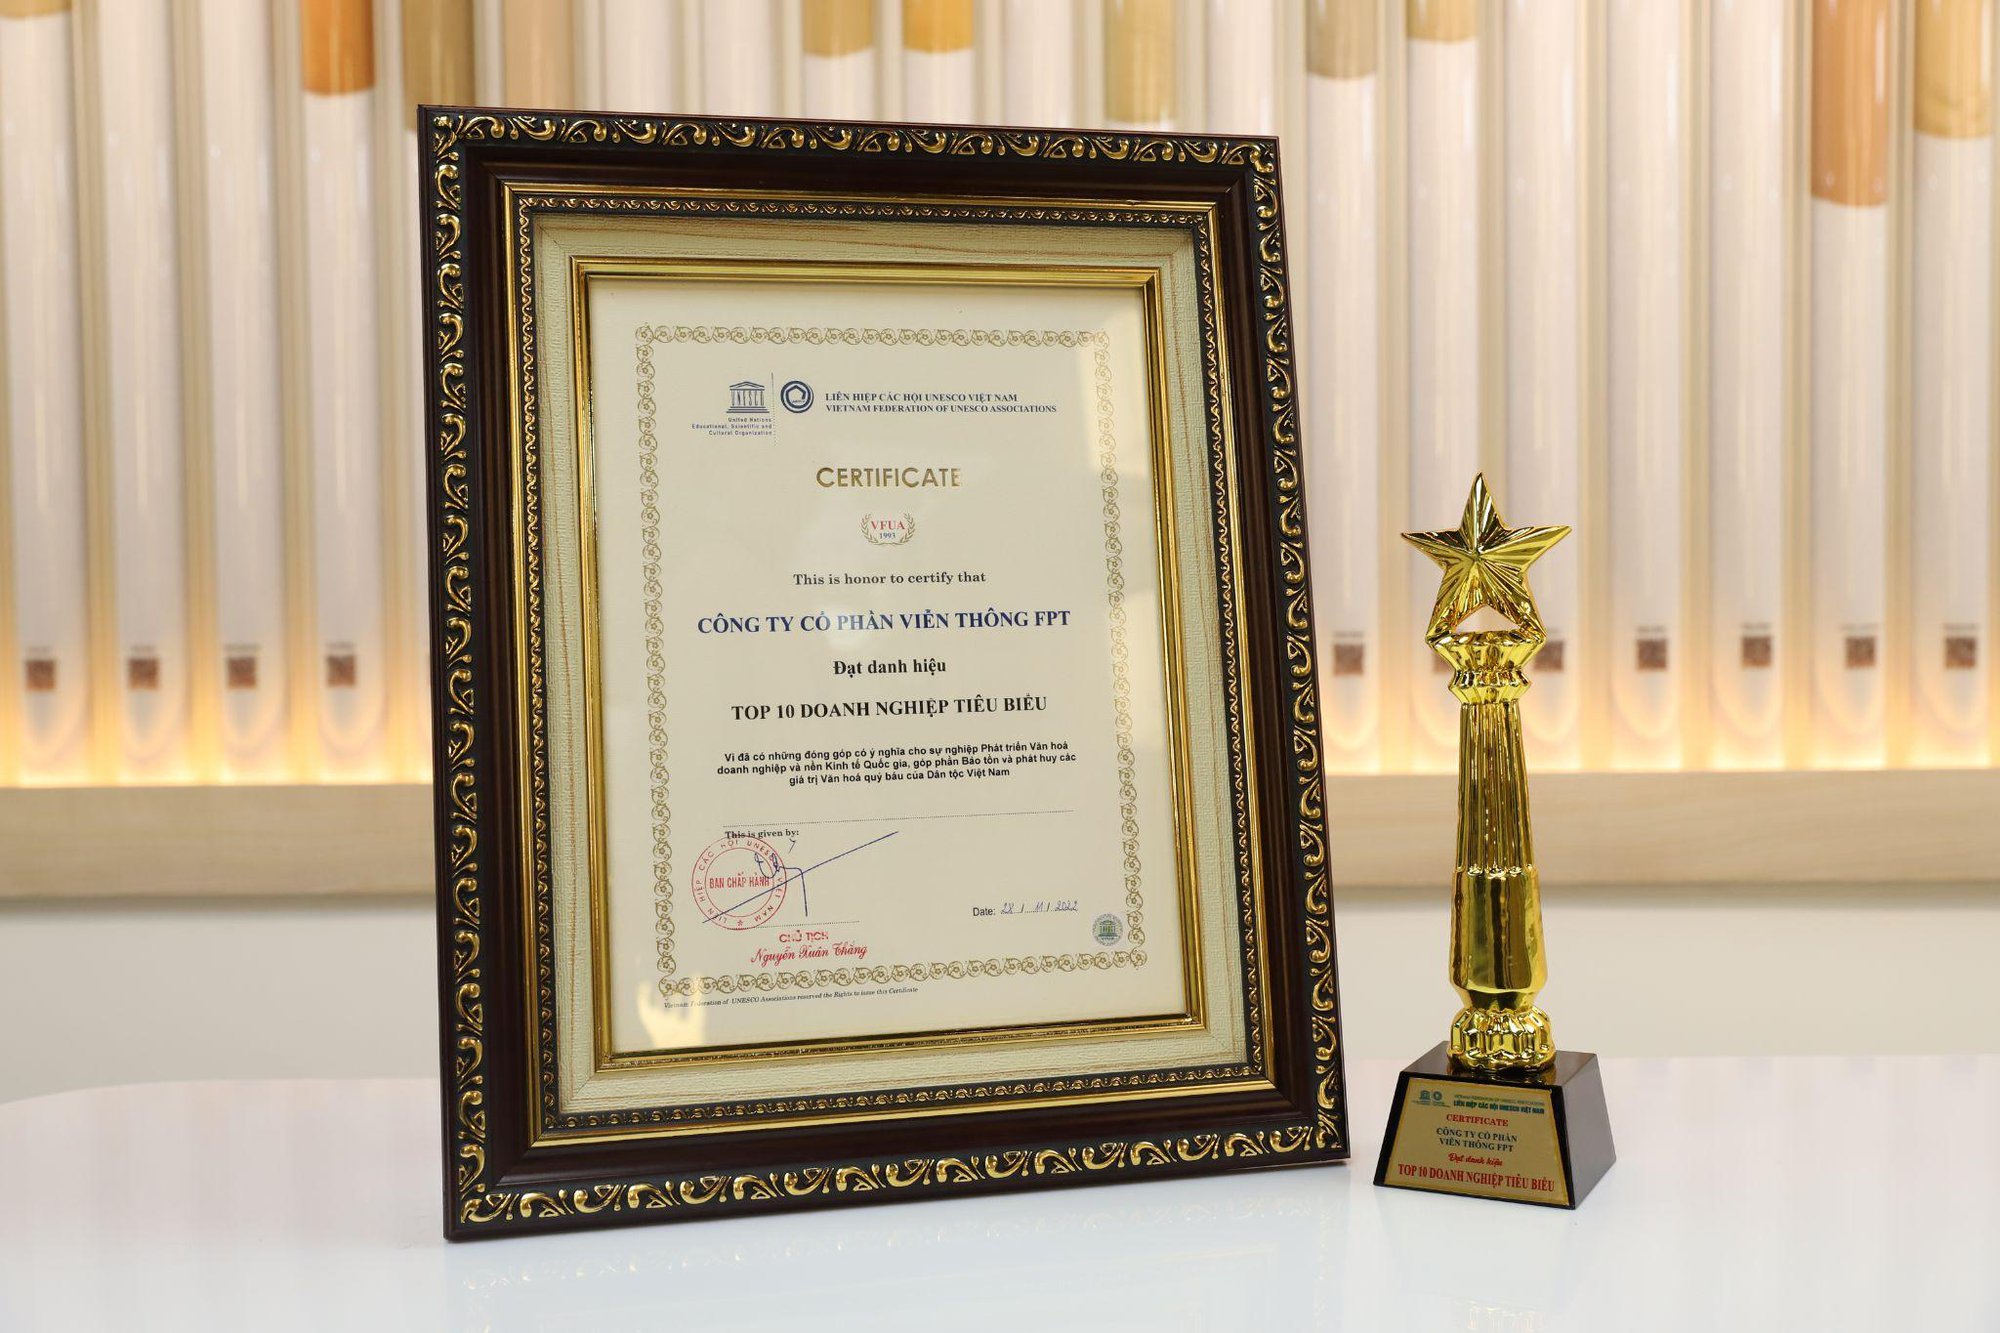 FPT Telecom vinh dự đạt Top 10 Doanh nghiệp tiêu biểu UNESCO - Ảnh 1.